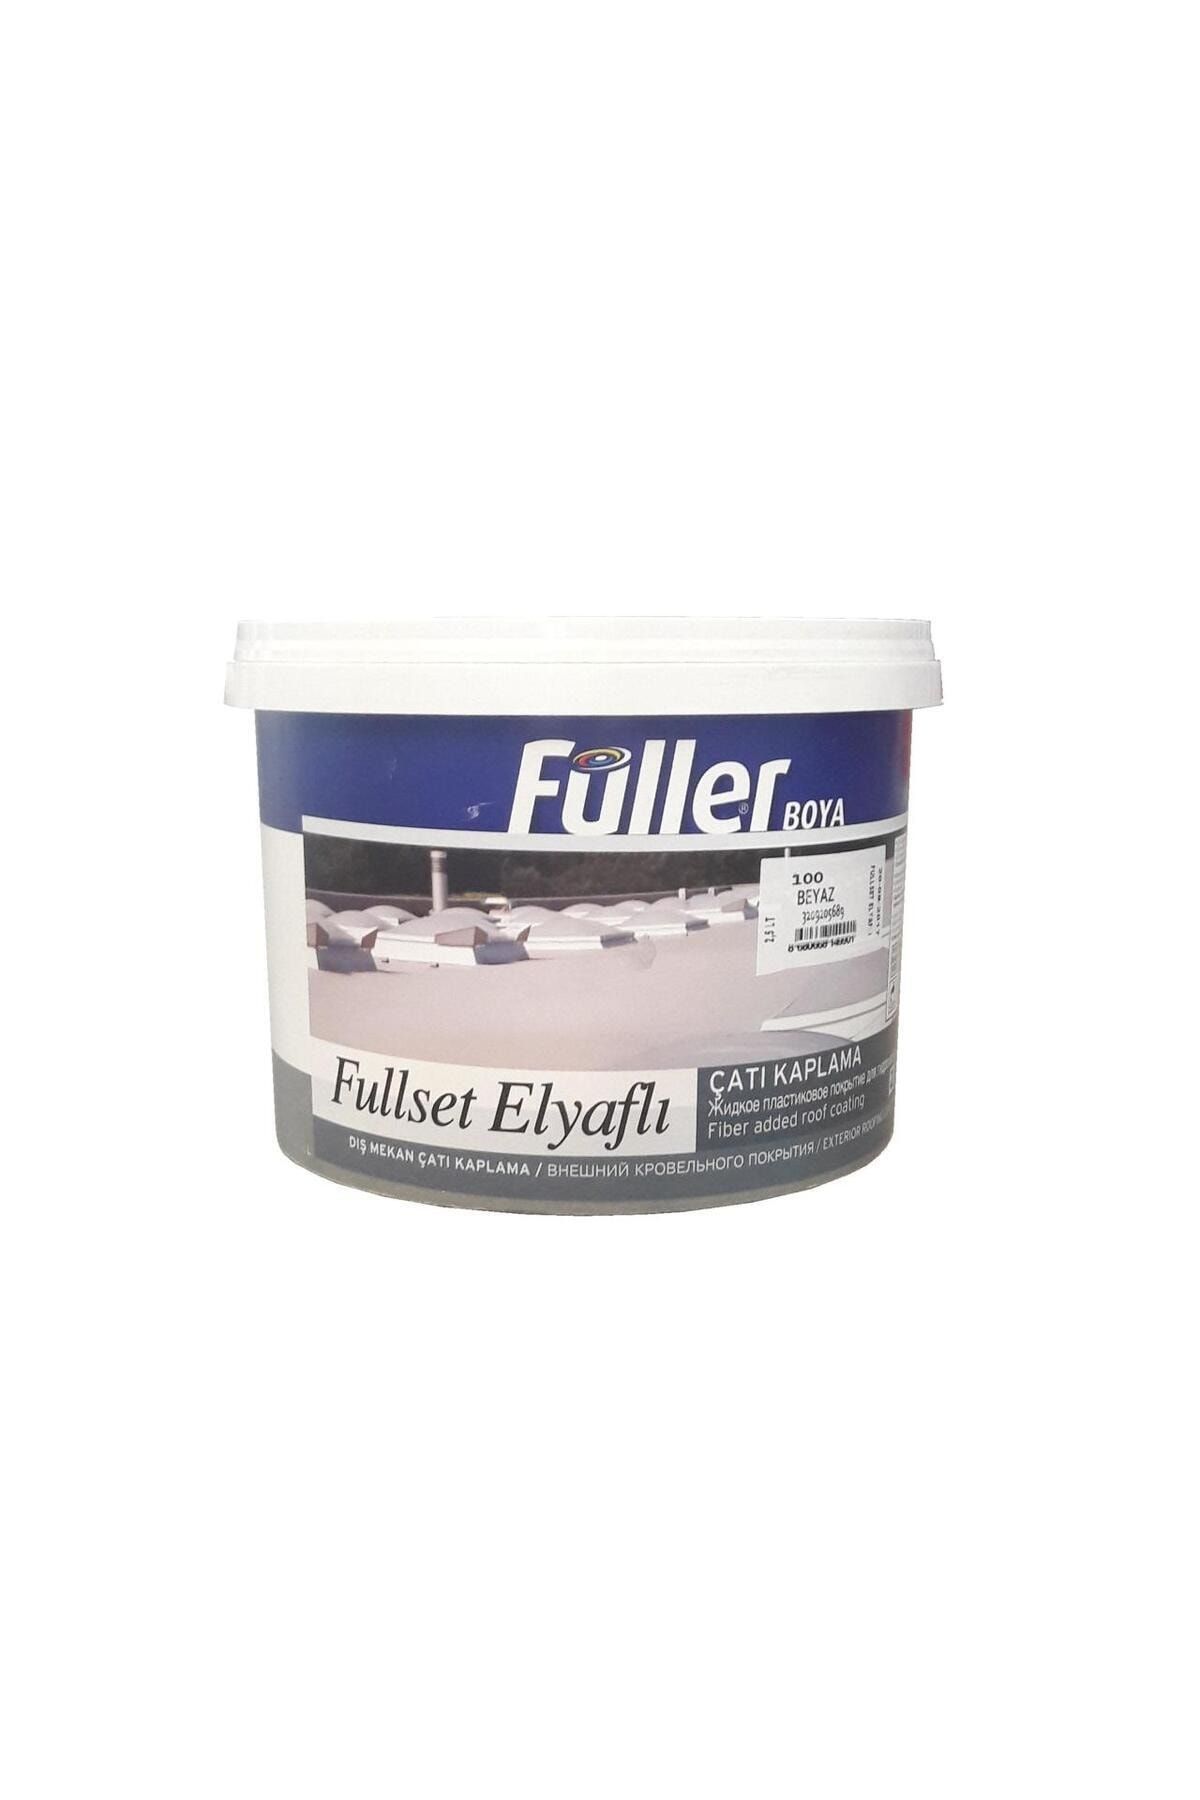 Genel Markalar Füller Fullset Elyaflı Çatı Kaplama 2,5 Litre Beyaz(Lisinya) - 59878-1453